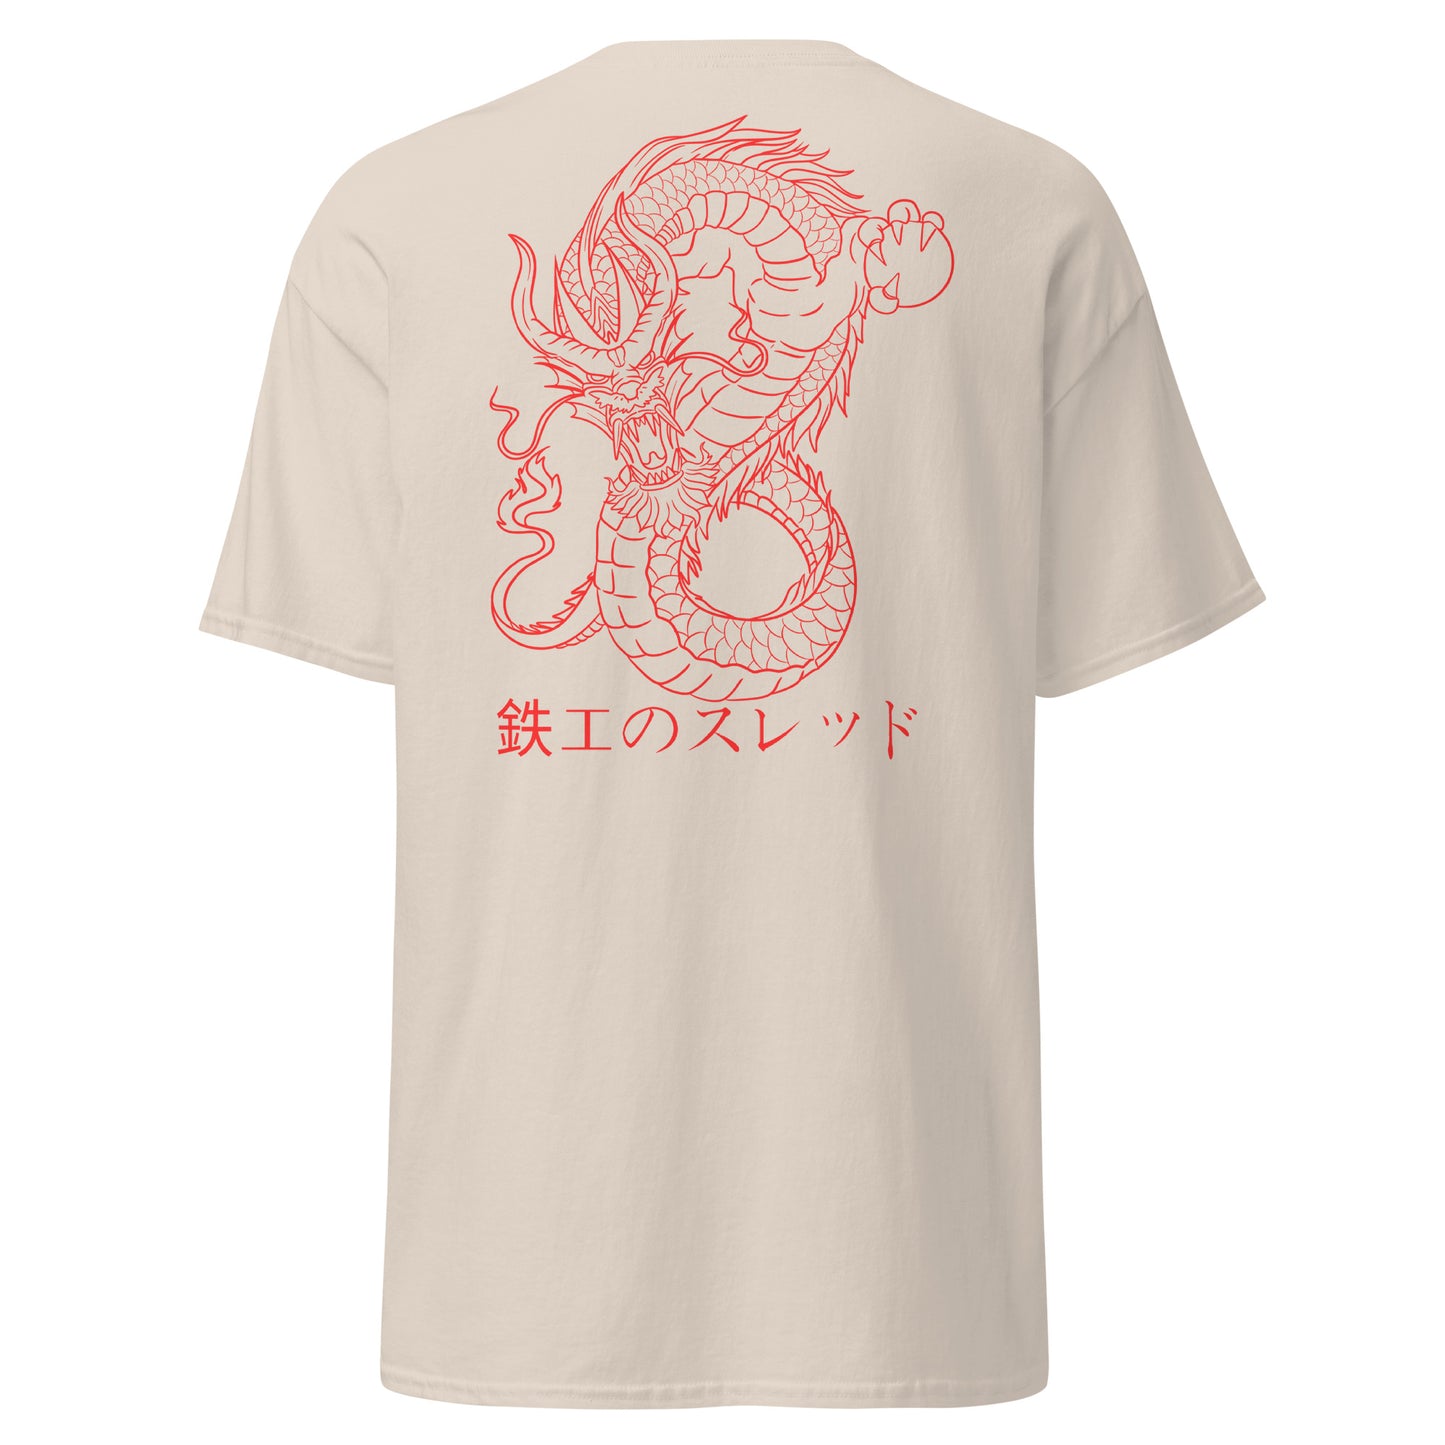 Reign of Fire T-shirt